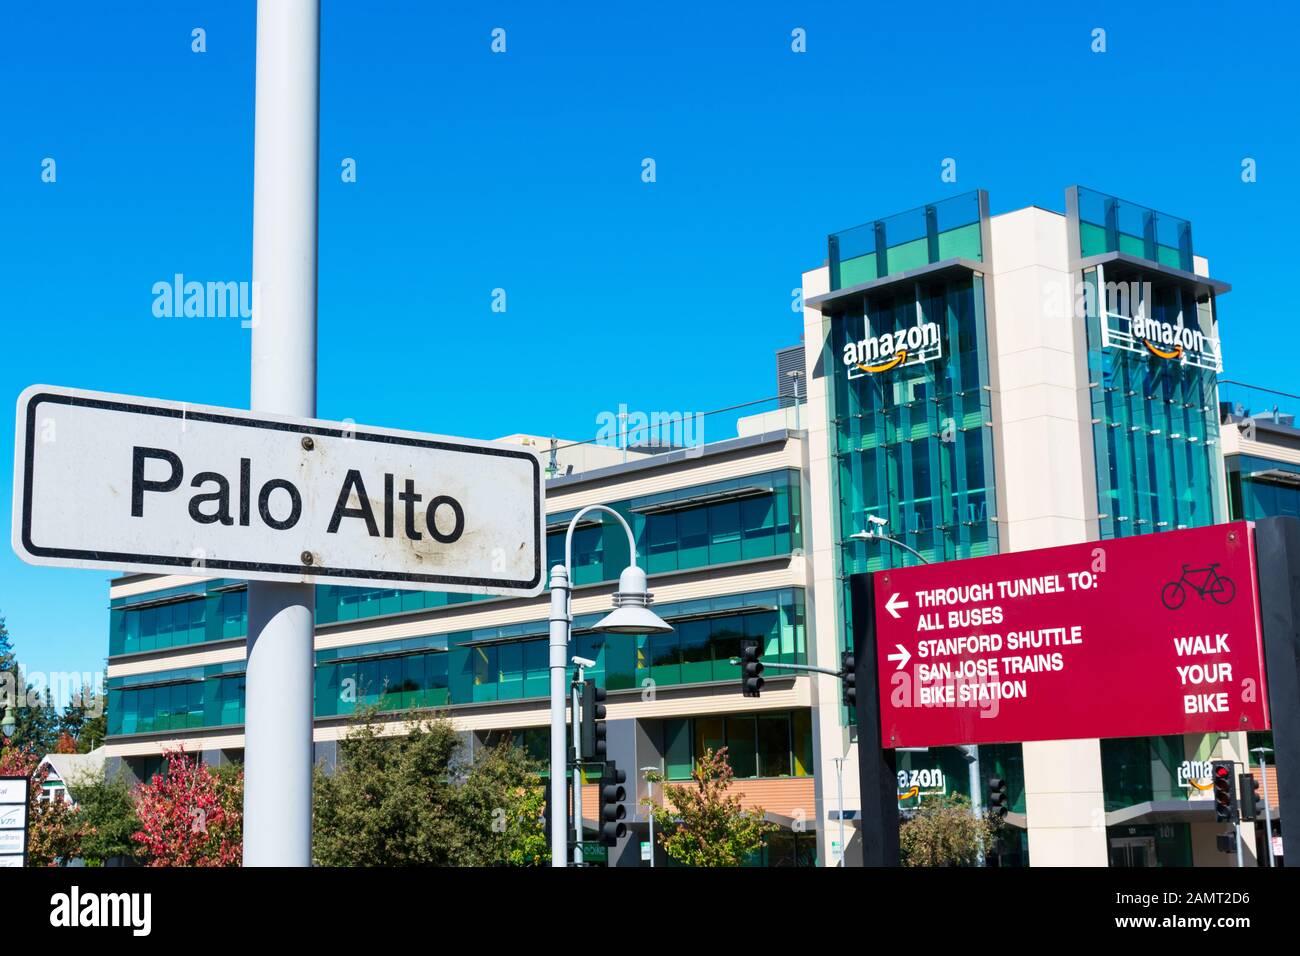 Schild zum Bahnhof Palo Alto Caltrain. Wegweiser und Informationen für  Radfahrer und Fußgänger. Amazon.com Gebäudefassade des  E-Commerce-Unternehmens Stockfotografie - Alamy